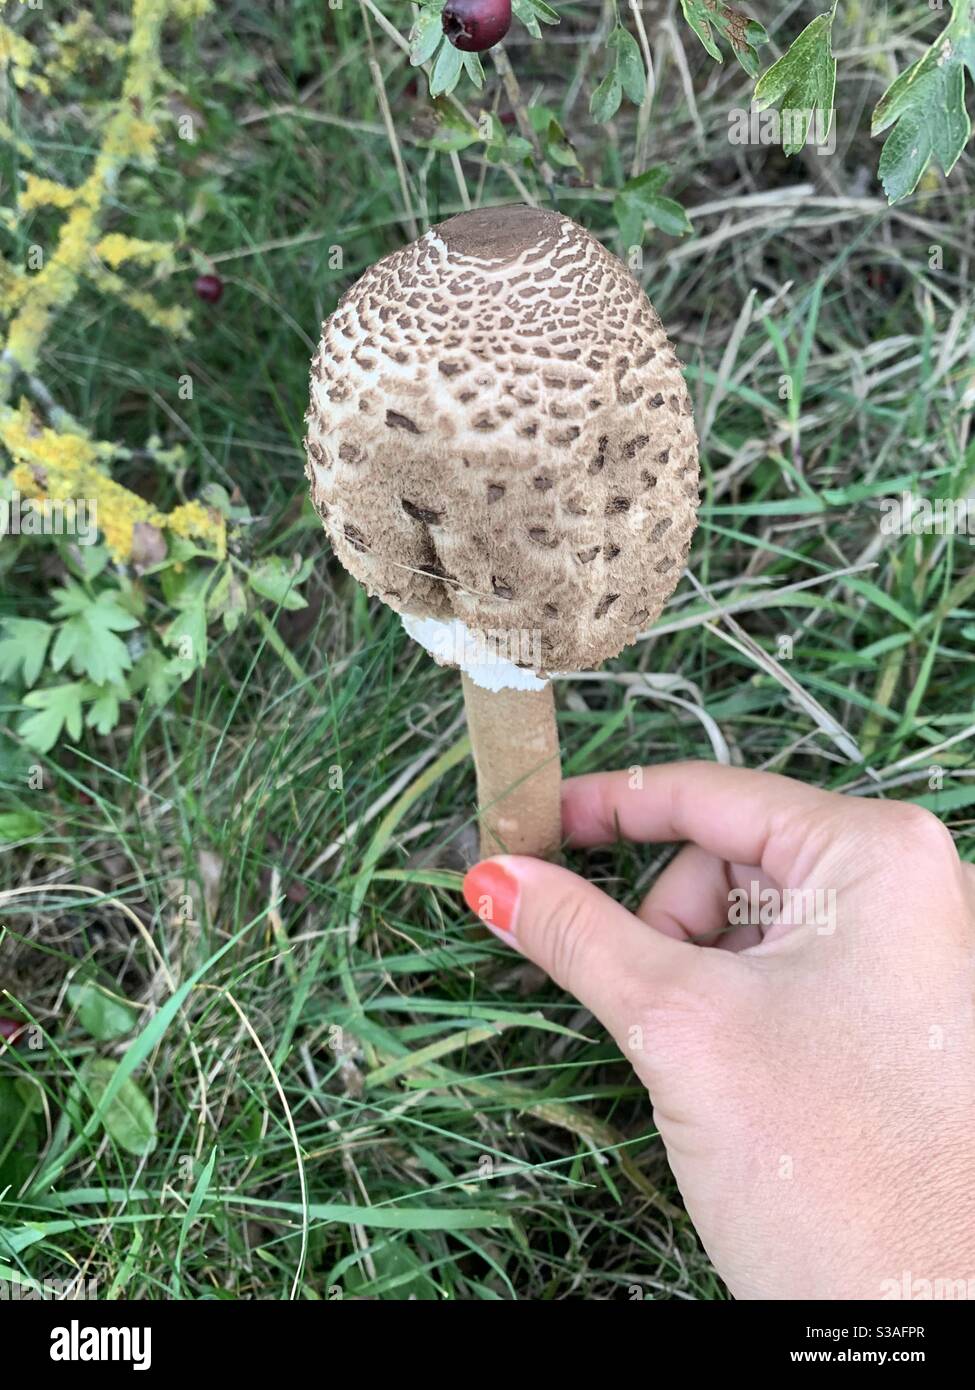 Hand holding shaggy parasol mushroom Stock Photo